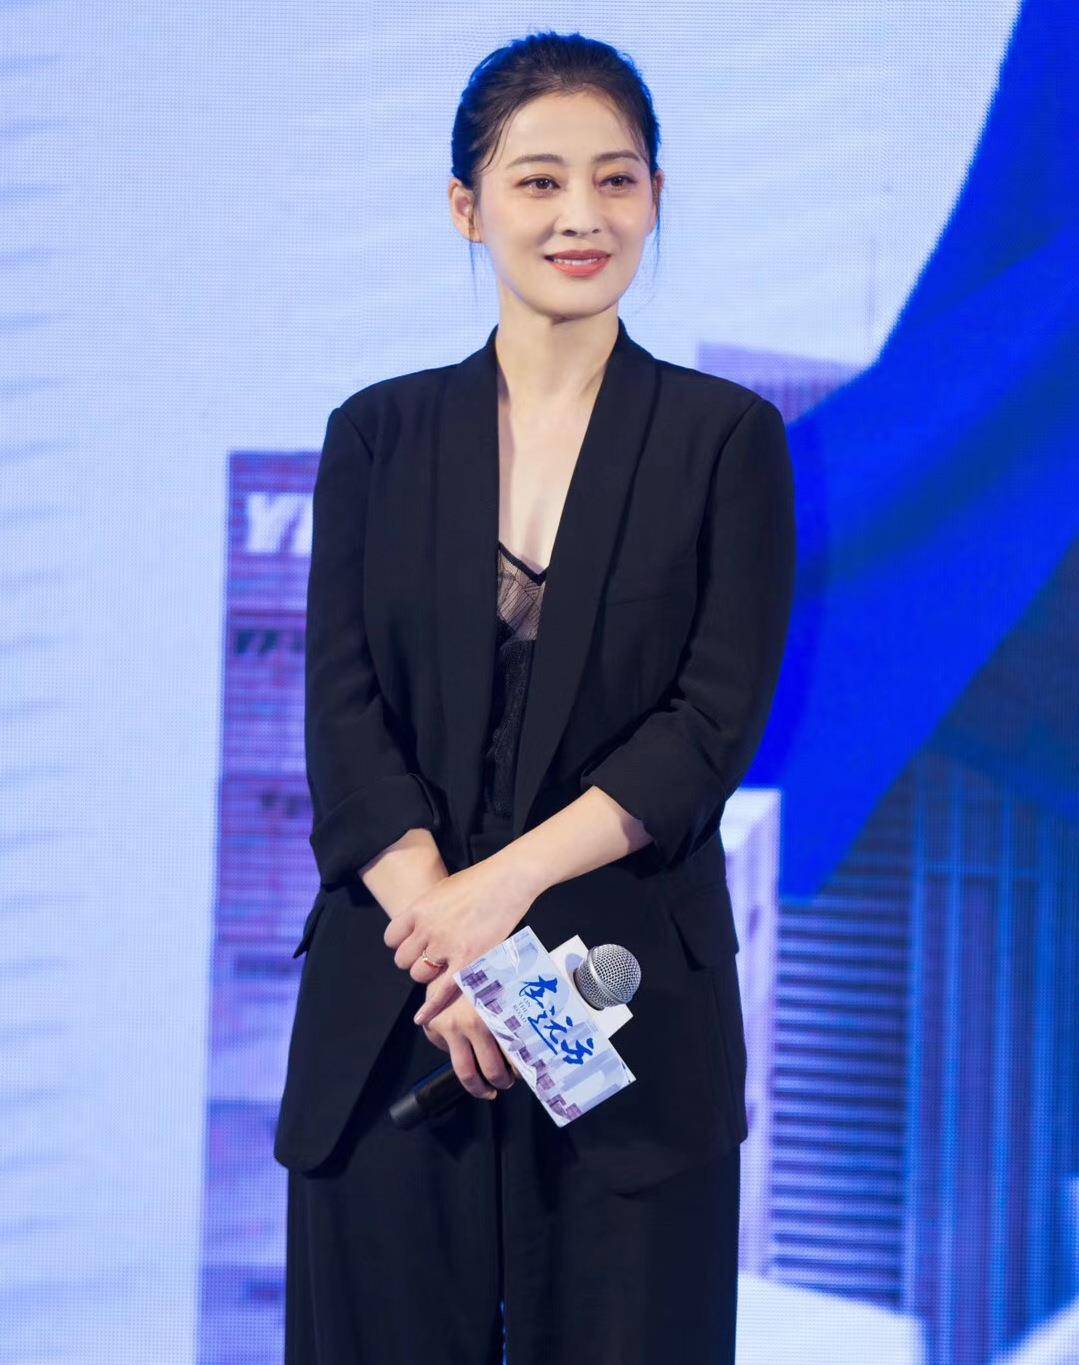 历史上的今天4月30日_1975年梅婷出生。梅婷，中国演员。